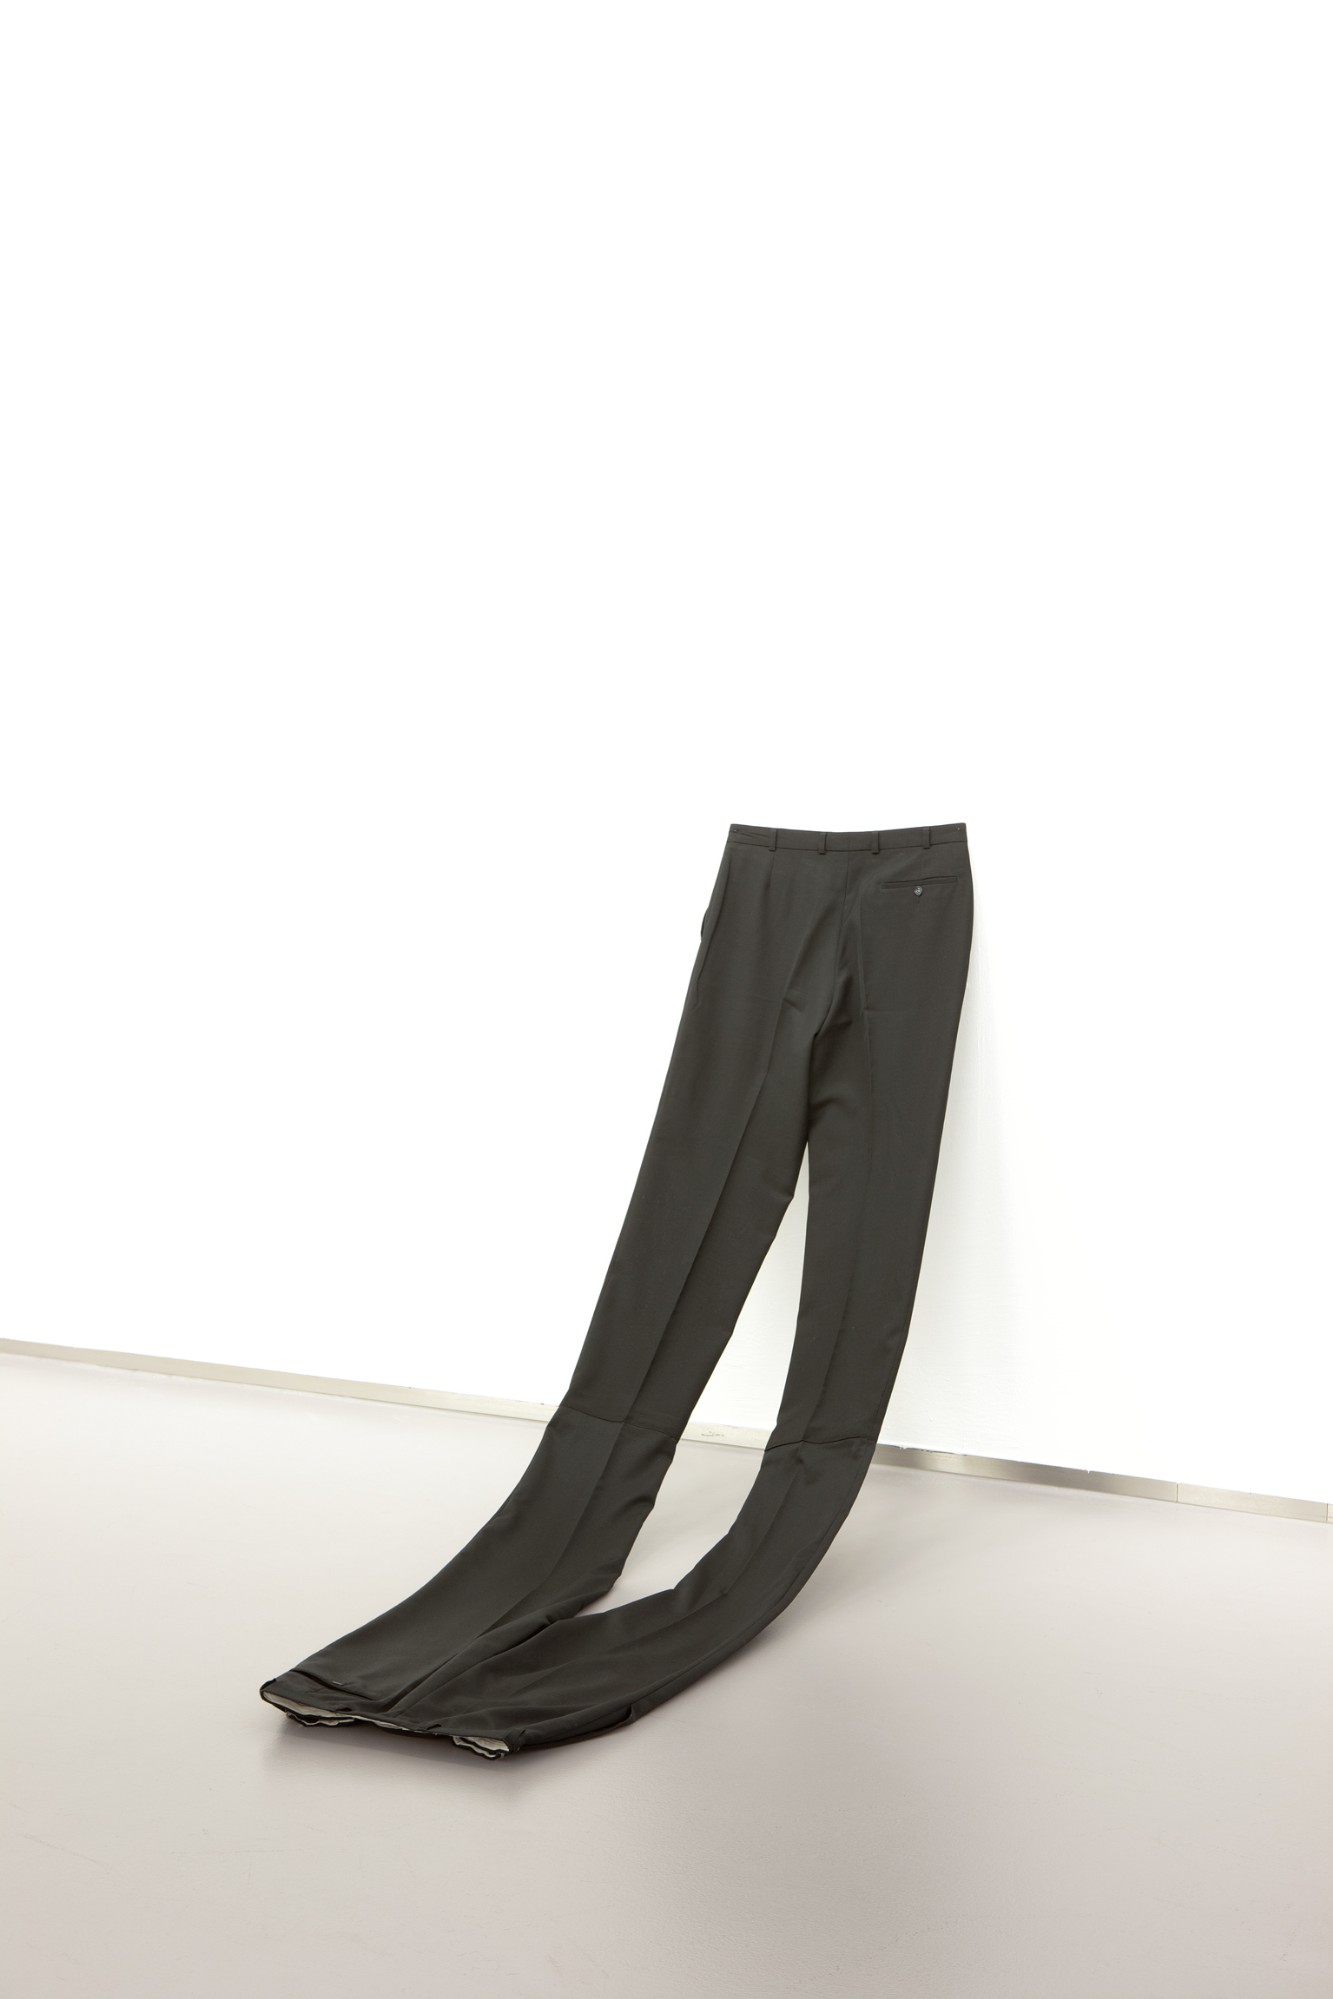 Anna Kolodziejska, Ohne Titel (zweimal Ich), 2012, 2 men trousers, 110 x 45 x 153 cm